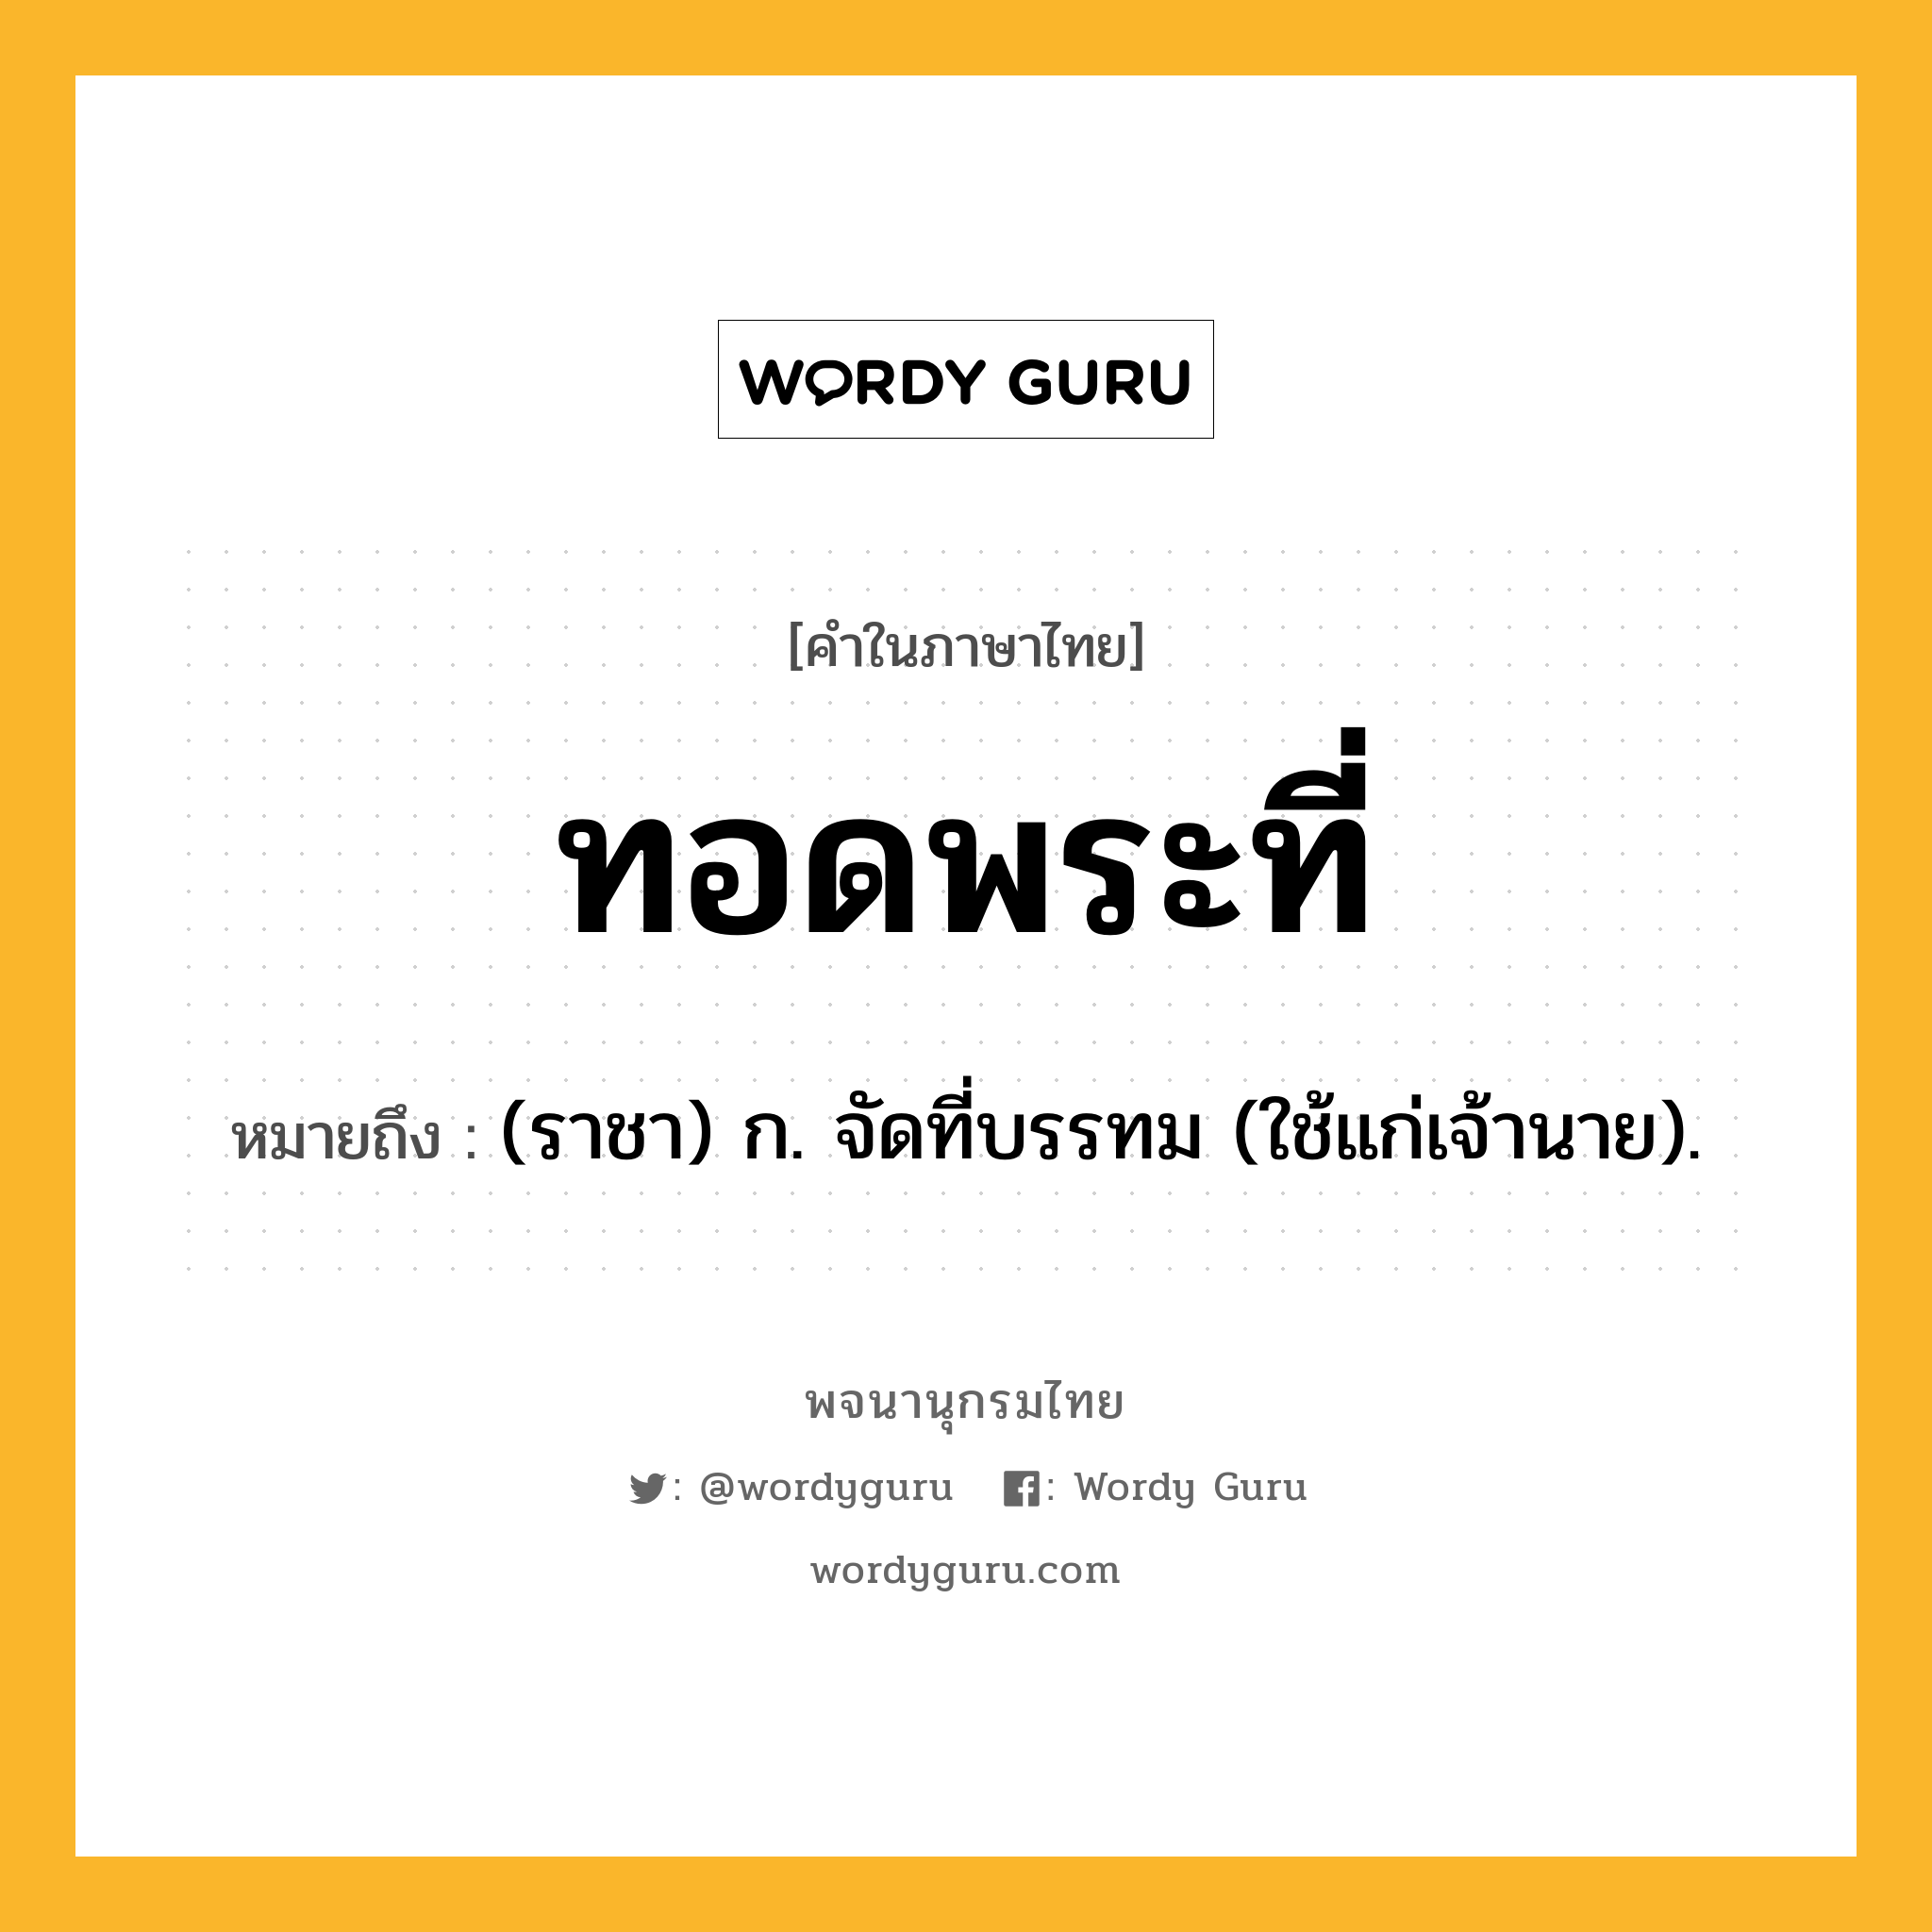 ทอดพระที่ ความหมาย หมายถึงอะไร?, คำในภาษาไทย ทอดพระที่ หมายถึง (ราชา) ก. จัดที่บรรทม (ใช้แก่เจ้านาย).